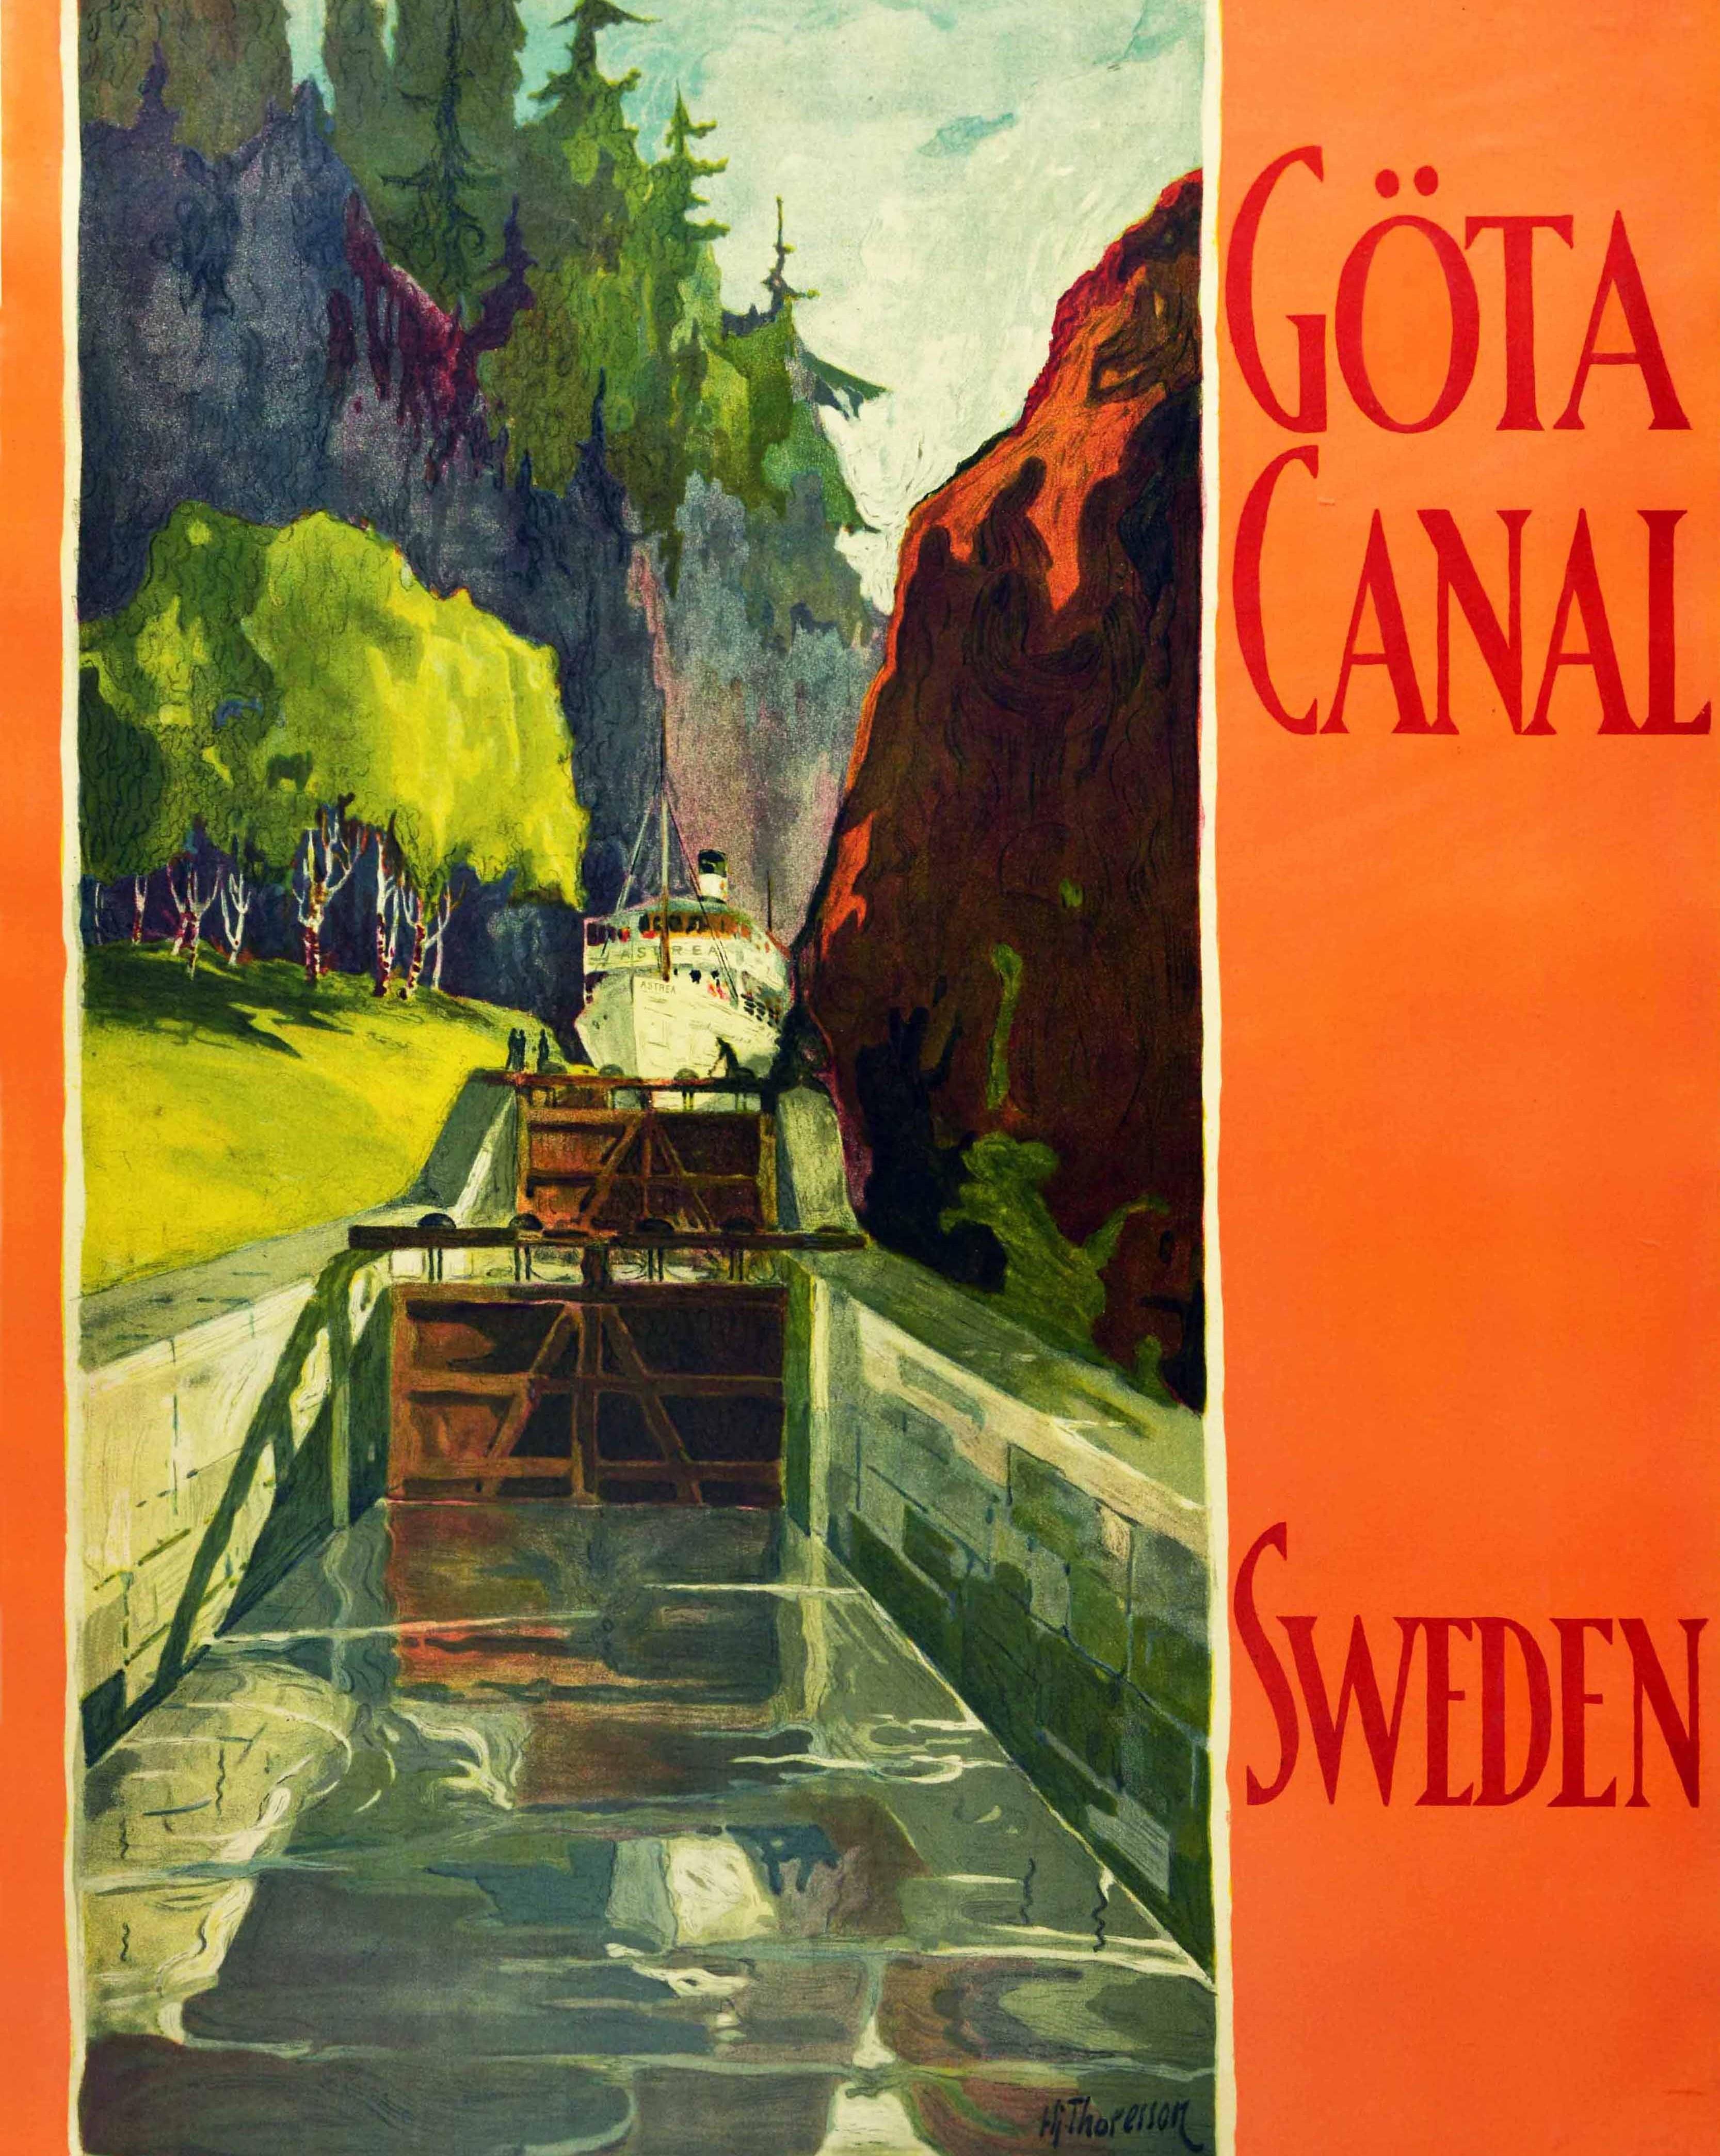 Original Vintage-Reiseplakat mit Werbung für eine Kreuzfahrt durch das Märchenland. Das Plakat des schwedischen Künstlers Hjalmar Thoresson (1893-1943) zeigt die Kreuzfahrtgesellschaft Astrea, die durch den Gota-Kanal fährt, umgeben von üppigen